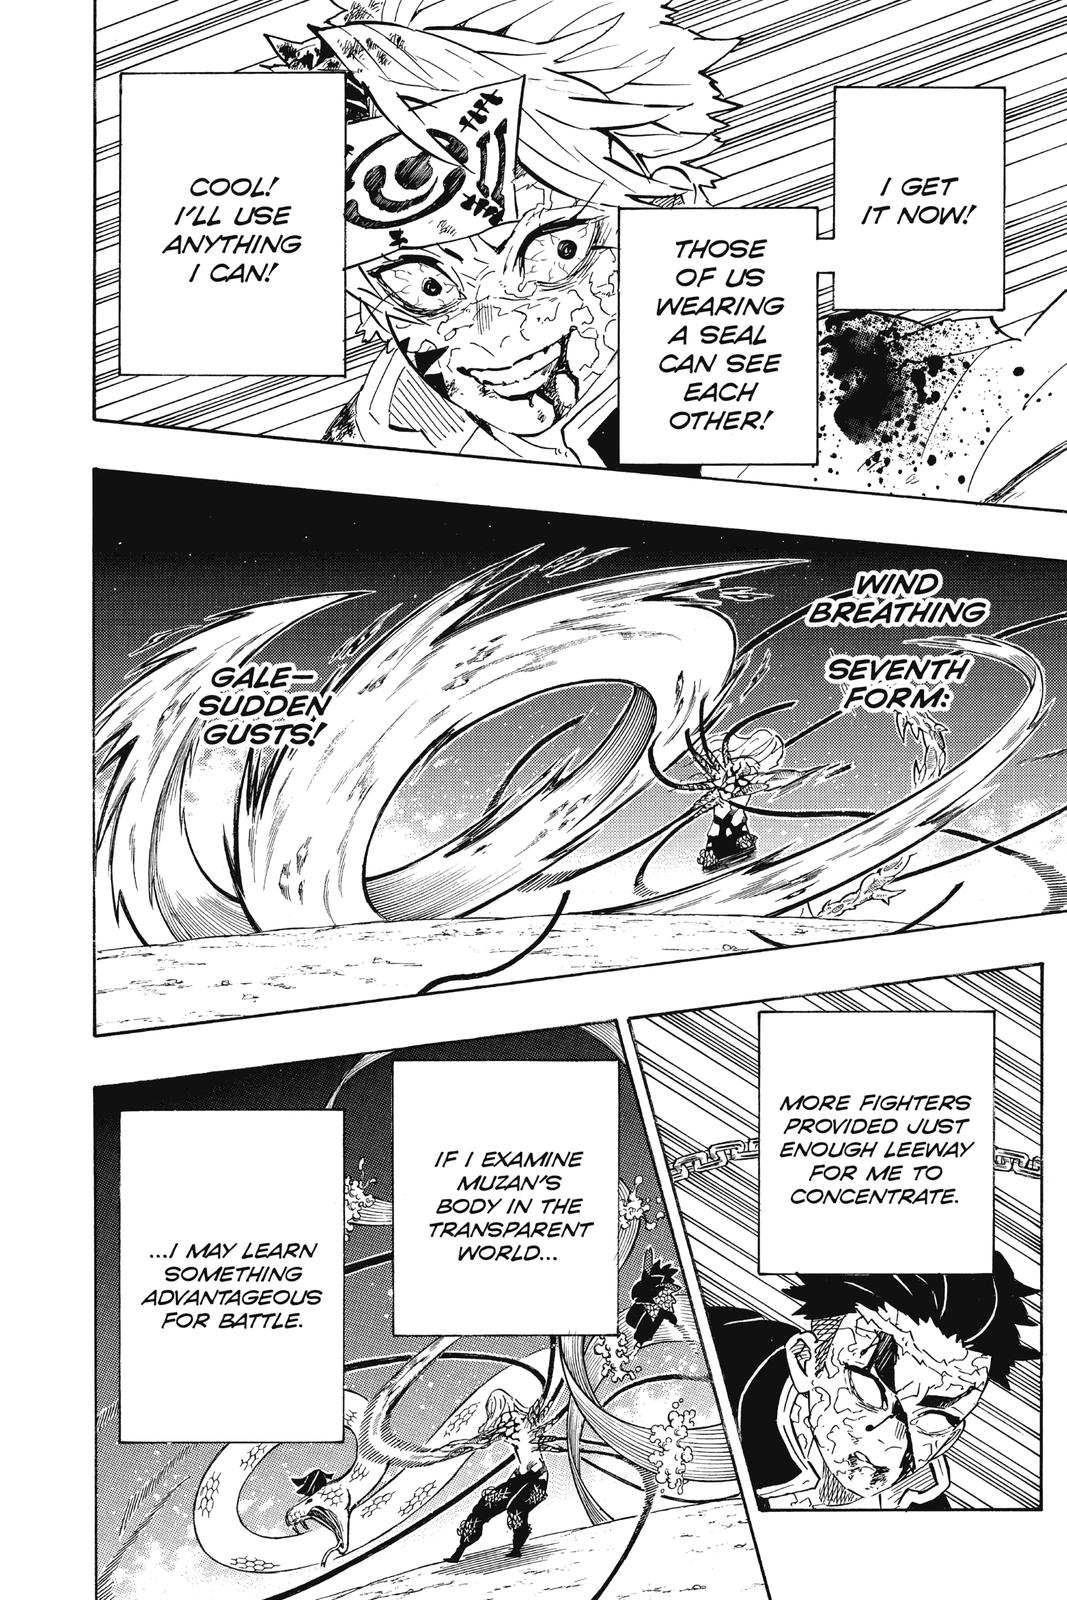 Demon Slayer Manga Manga Chapter - 191 - image 5